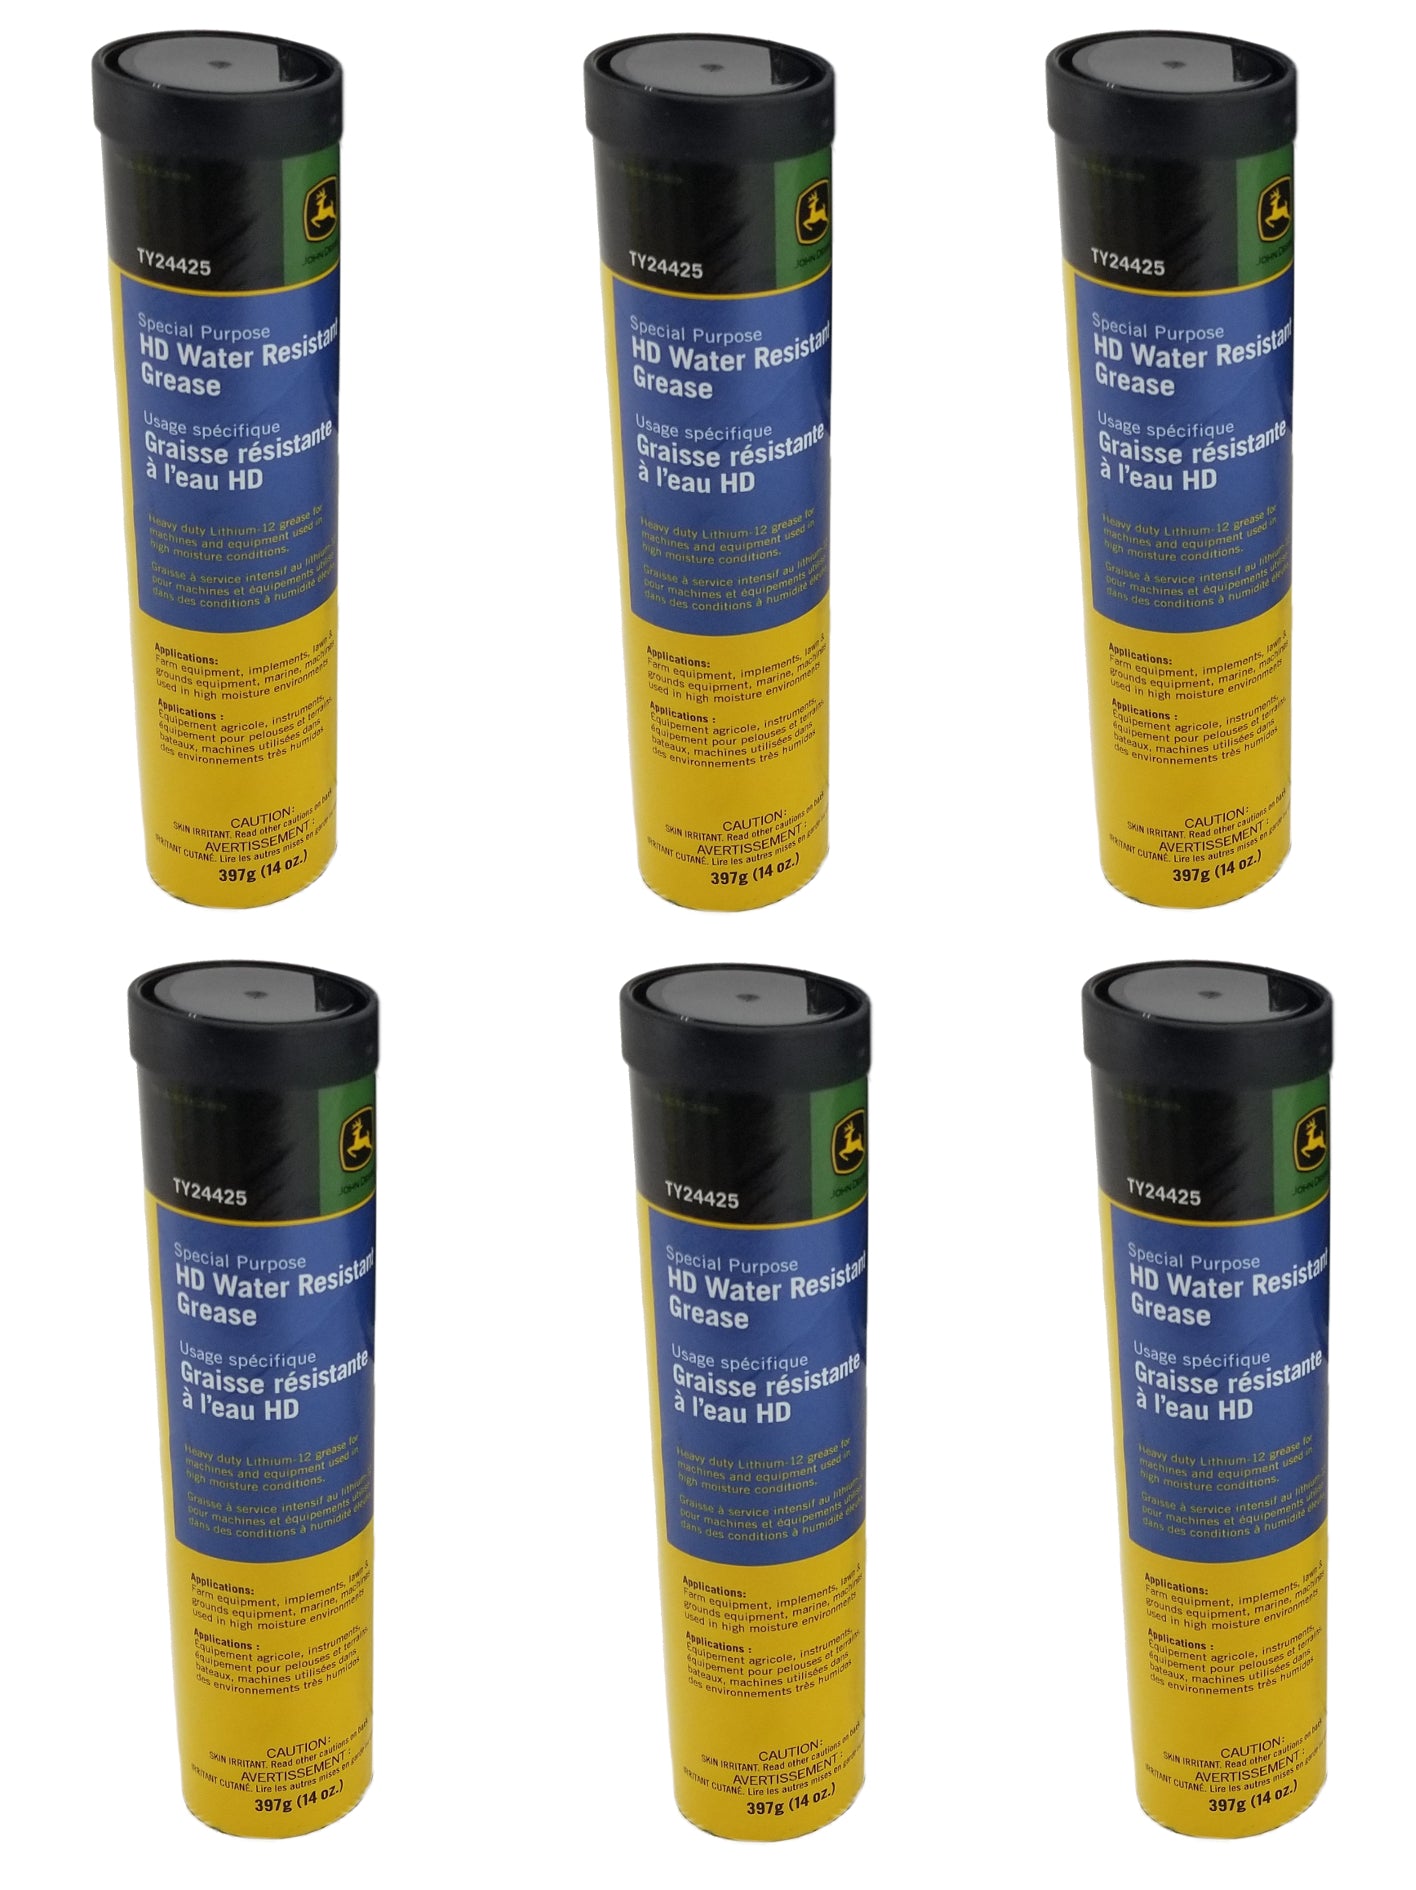 John Deere Special Purpose HD Water Resistant Grease (6-PACK) - TY24425